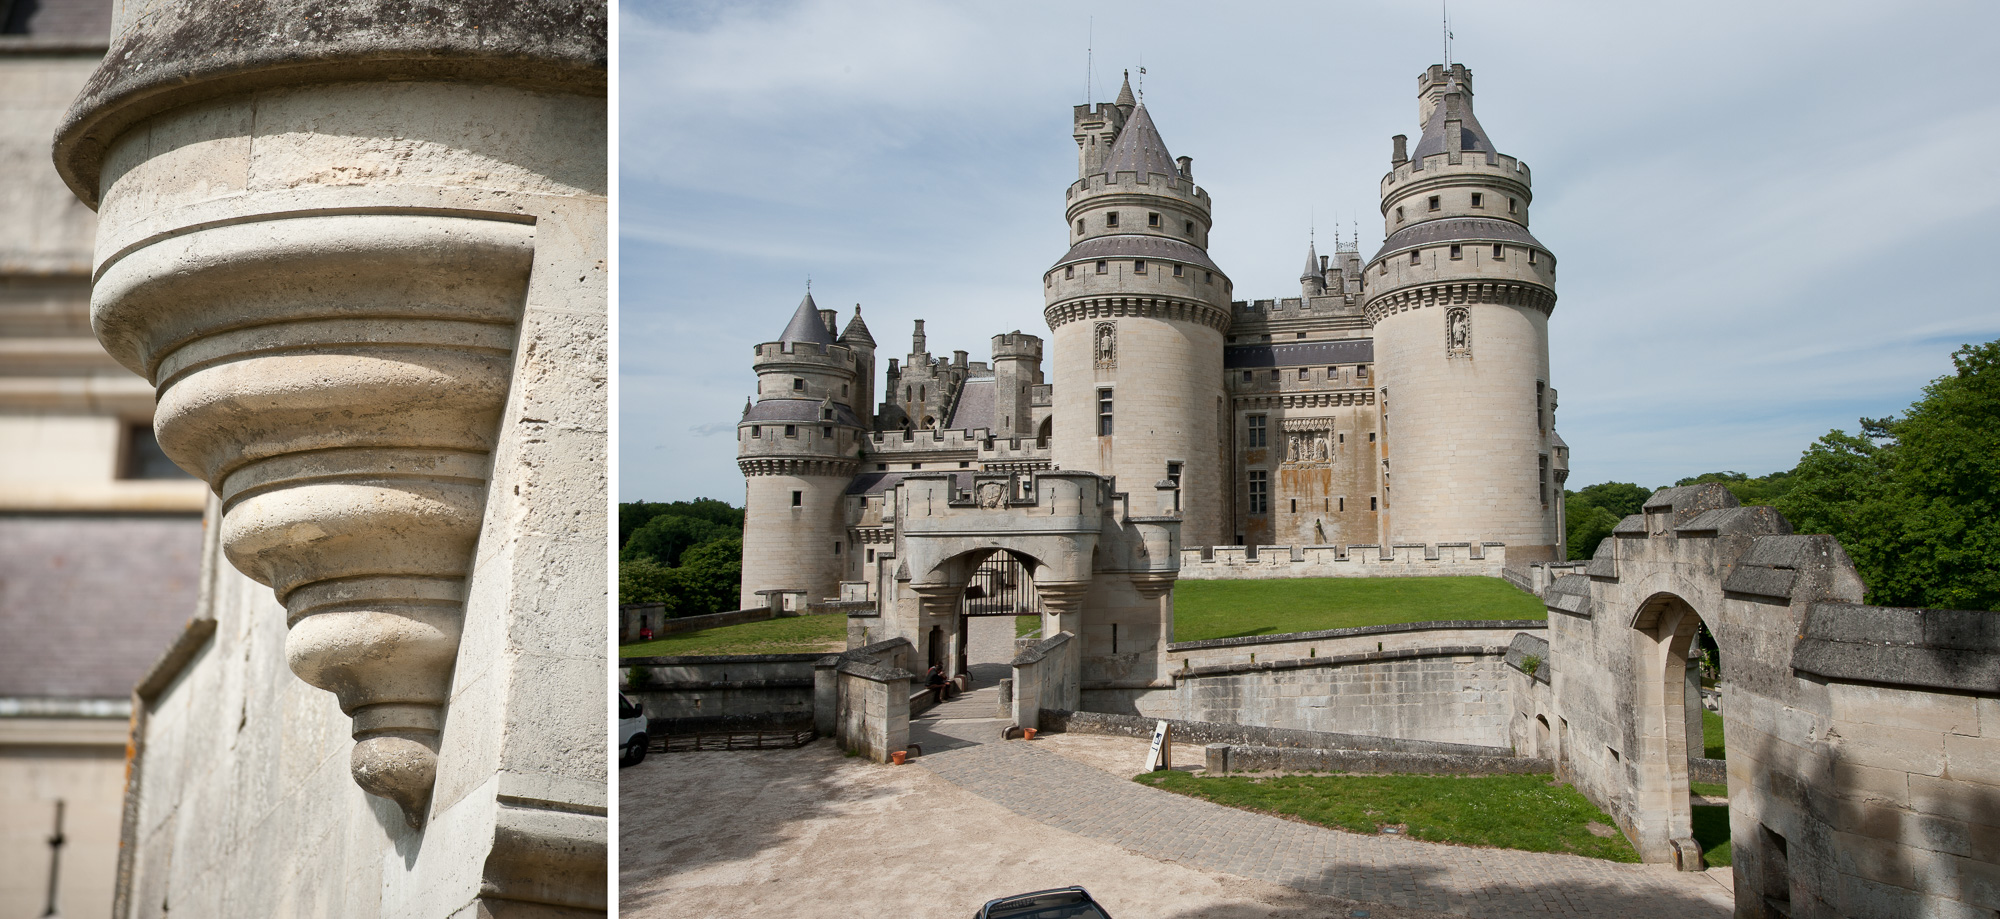 Le Château, construit au XIV ème siècle, sous Louis d'Orléans, a été remanié par Viollet-le-Duc en 1850. L'ornementation des façades, s'apparente à des décors de théâtre, avec ses sculptures d'animaux fantastiques., a été remanié par Viollet-le-Duc en 1850. L'édifice se reflète dans les eaux du lac., a été remanié par Viollet-le-Duc en 1850., a été remanié par Viollet-le-Duc en 1850. La grande cour intérieure et sa galerie ouverte ornée de voûtes à caissons et de chapiteaux historiés au style plutôt Renaissance., a été remanié par Viollet-le-Duc en 1850., a été remanié par Viollet-le-Duc en 1850. Huit tours d'enceinte semi-cylindriques surplombent l'édifice.